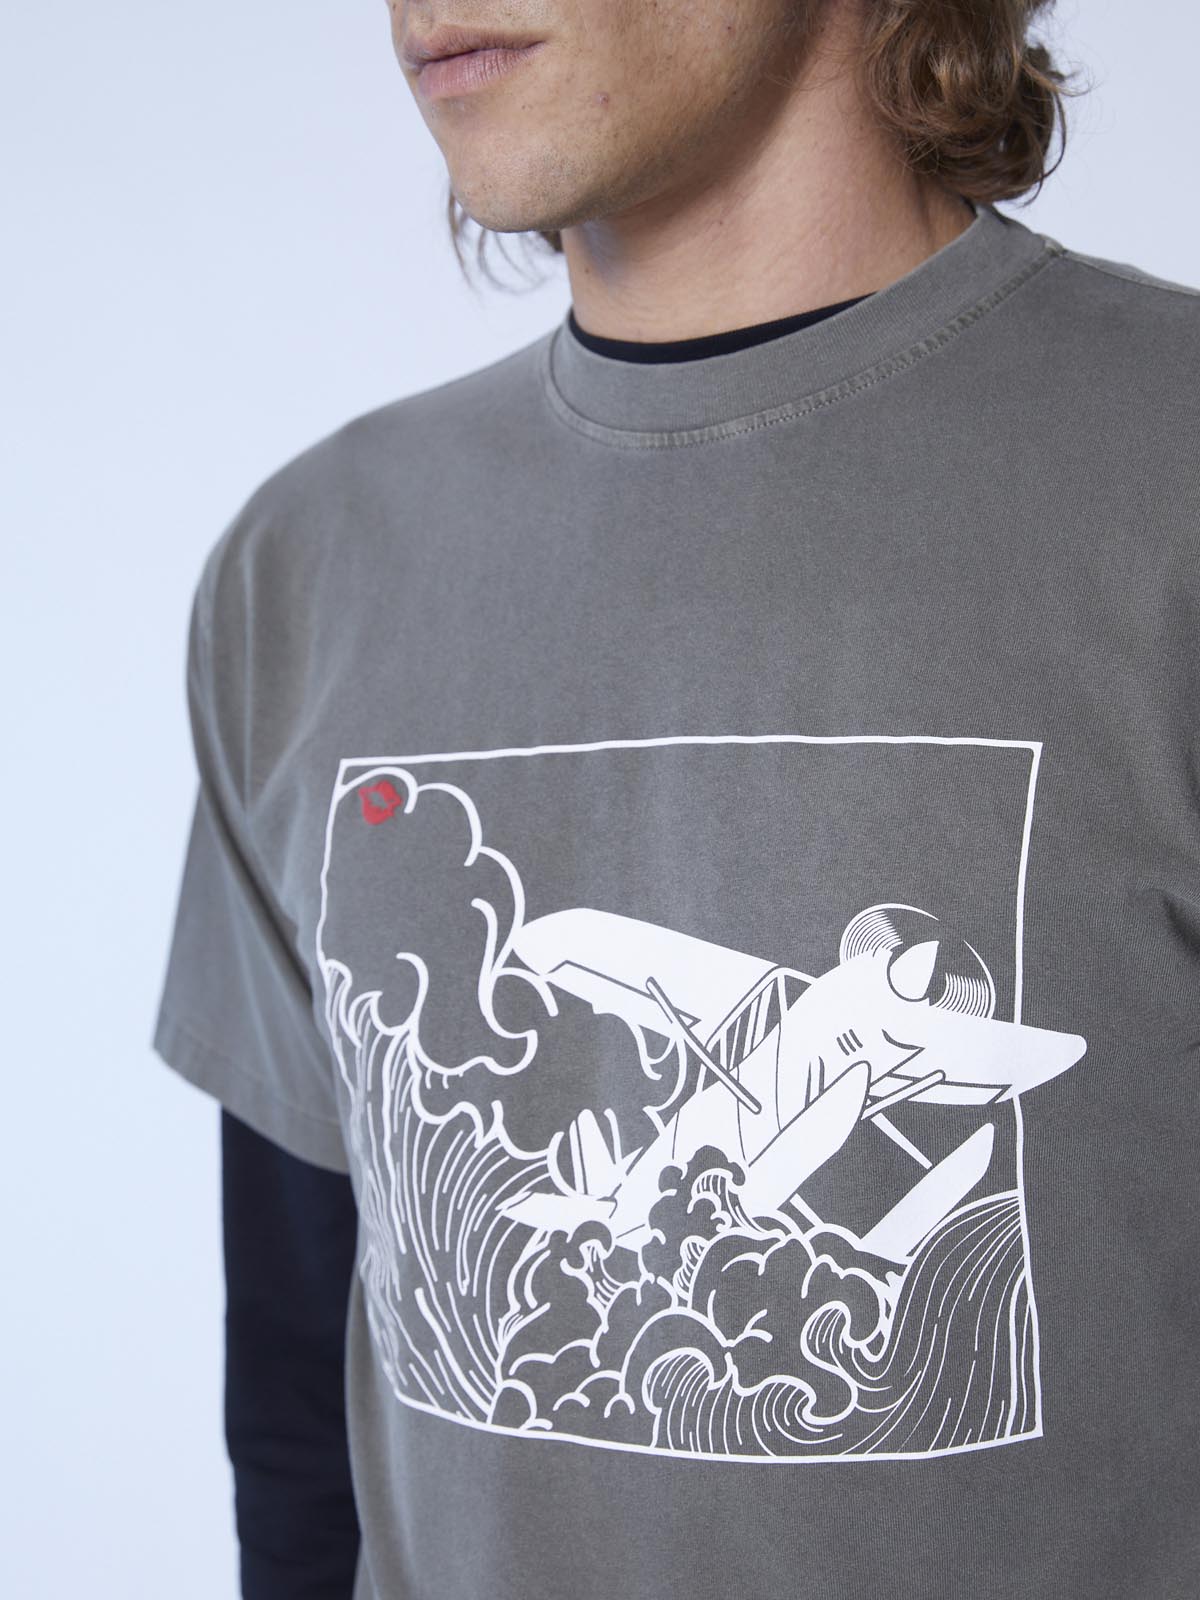 Kona Hokusai Air Surfer print T-shirt